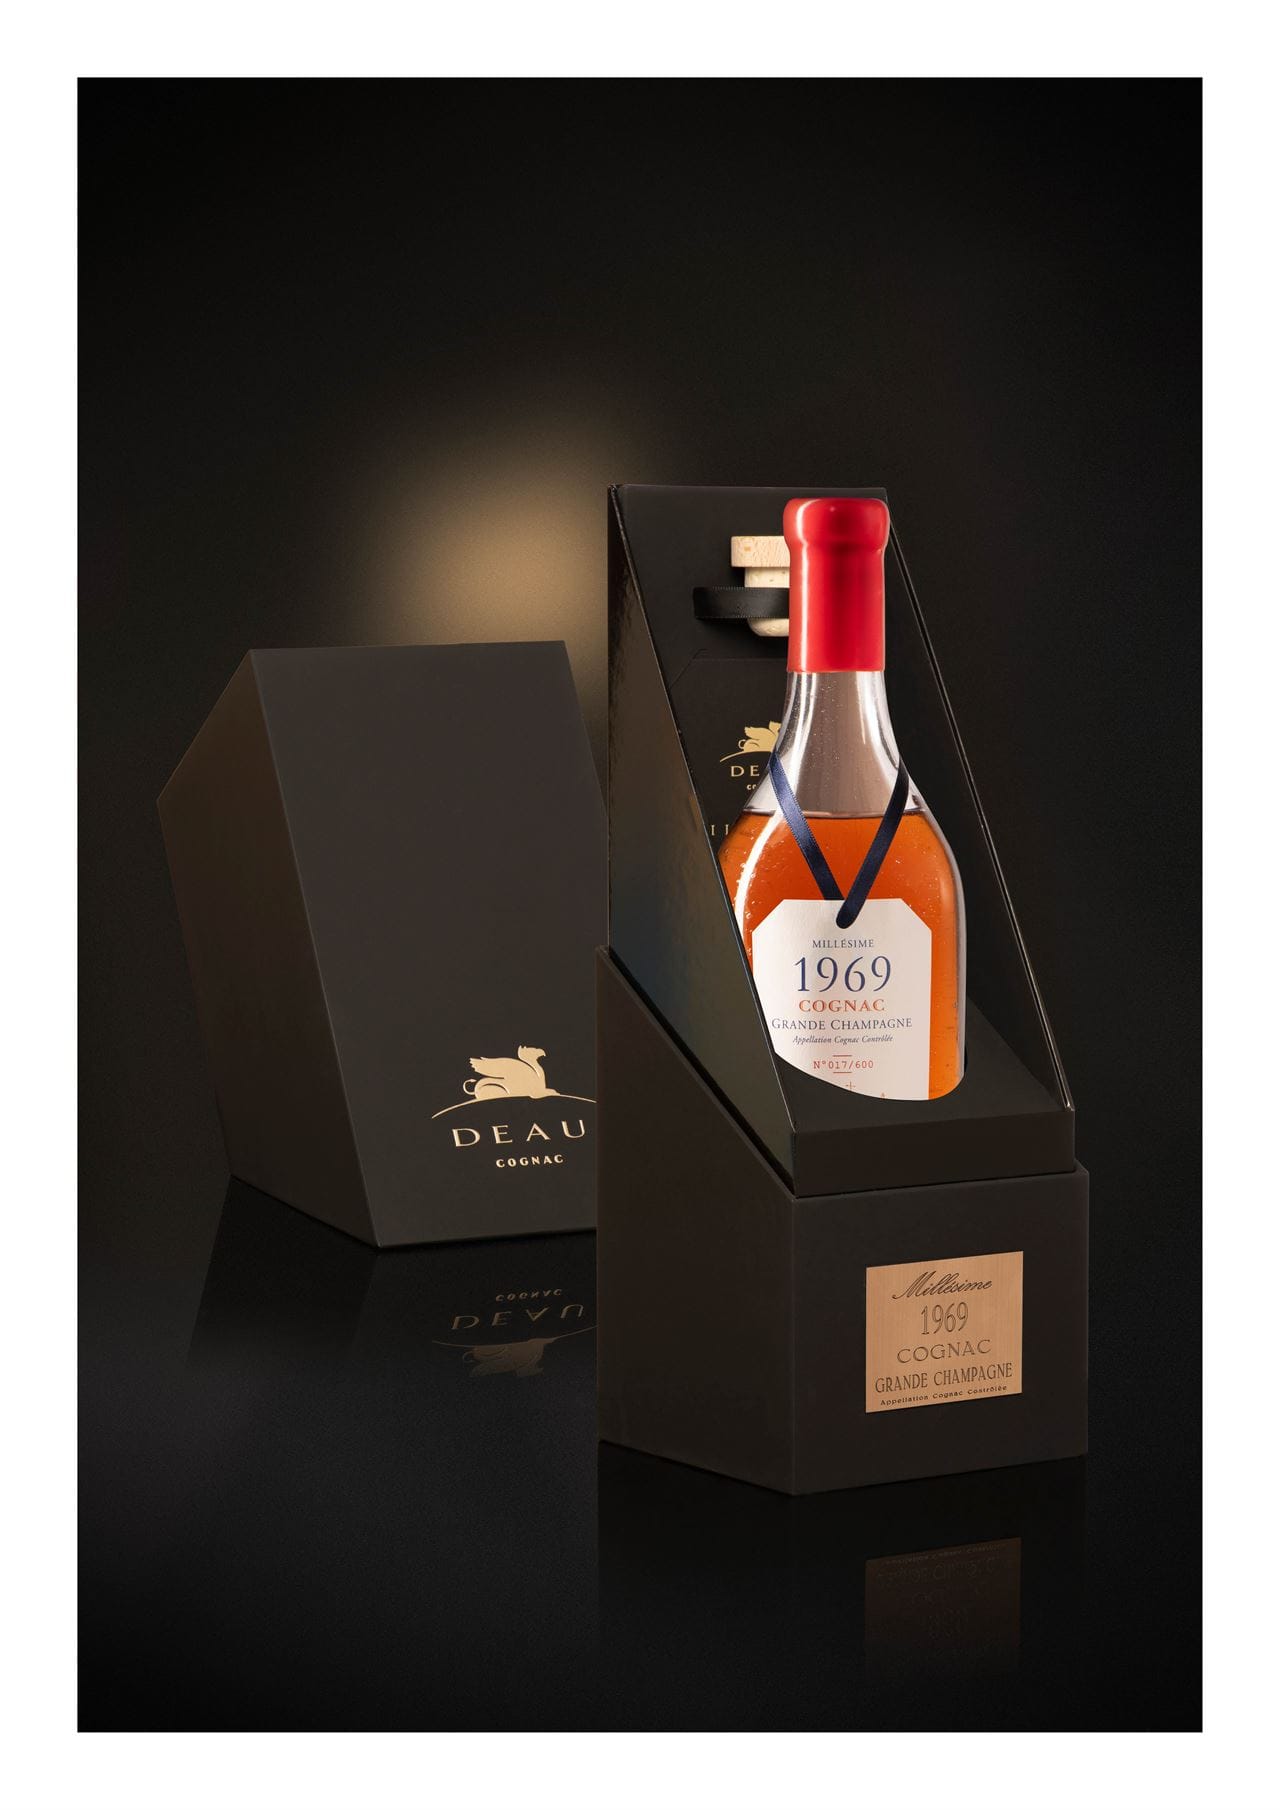 Deau Cognac dévoile un nouveau coffret pour son Millésime 1969